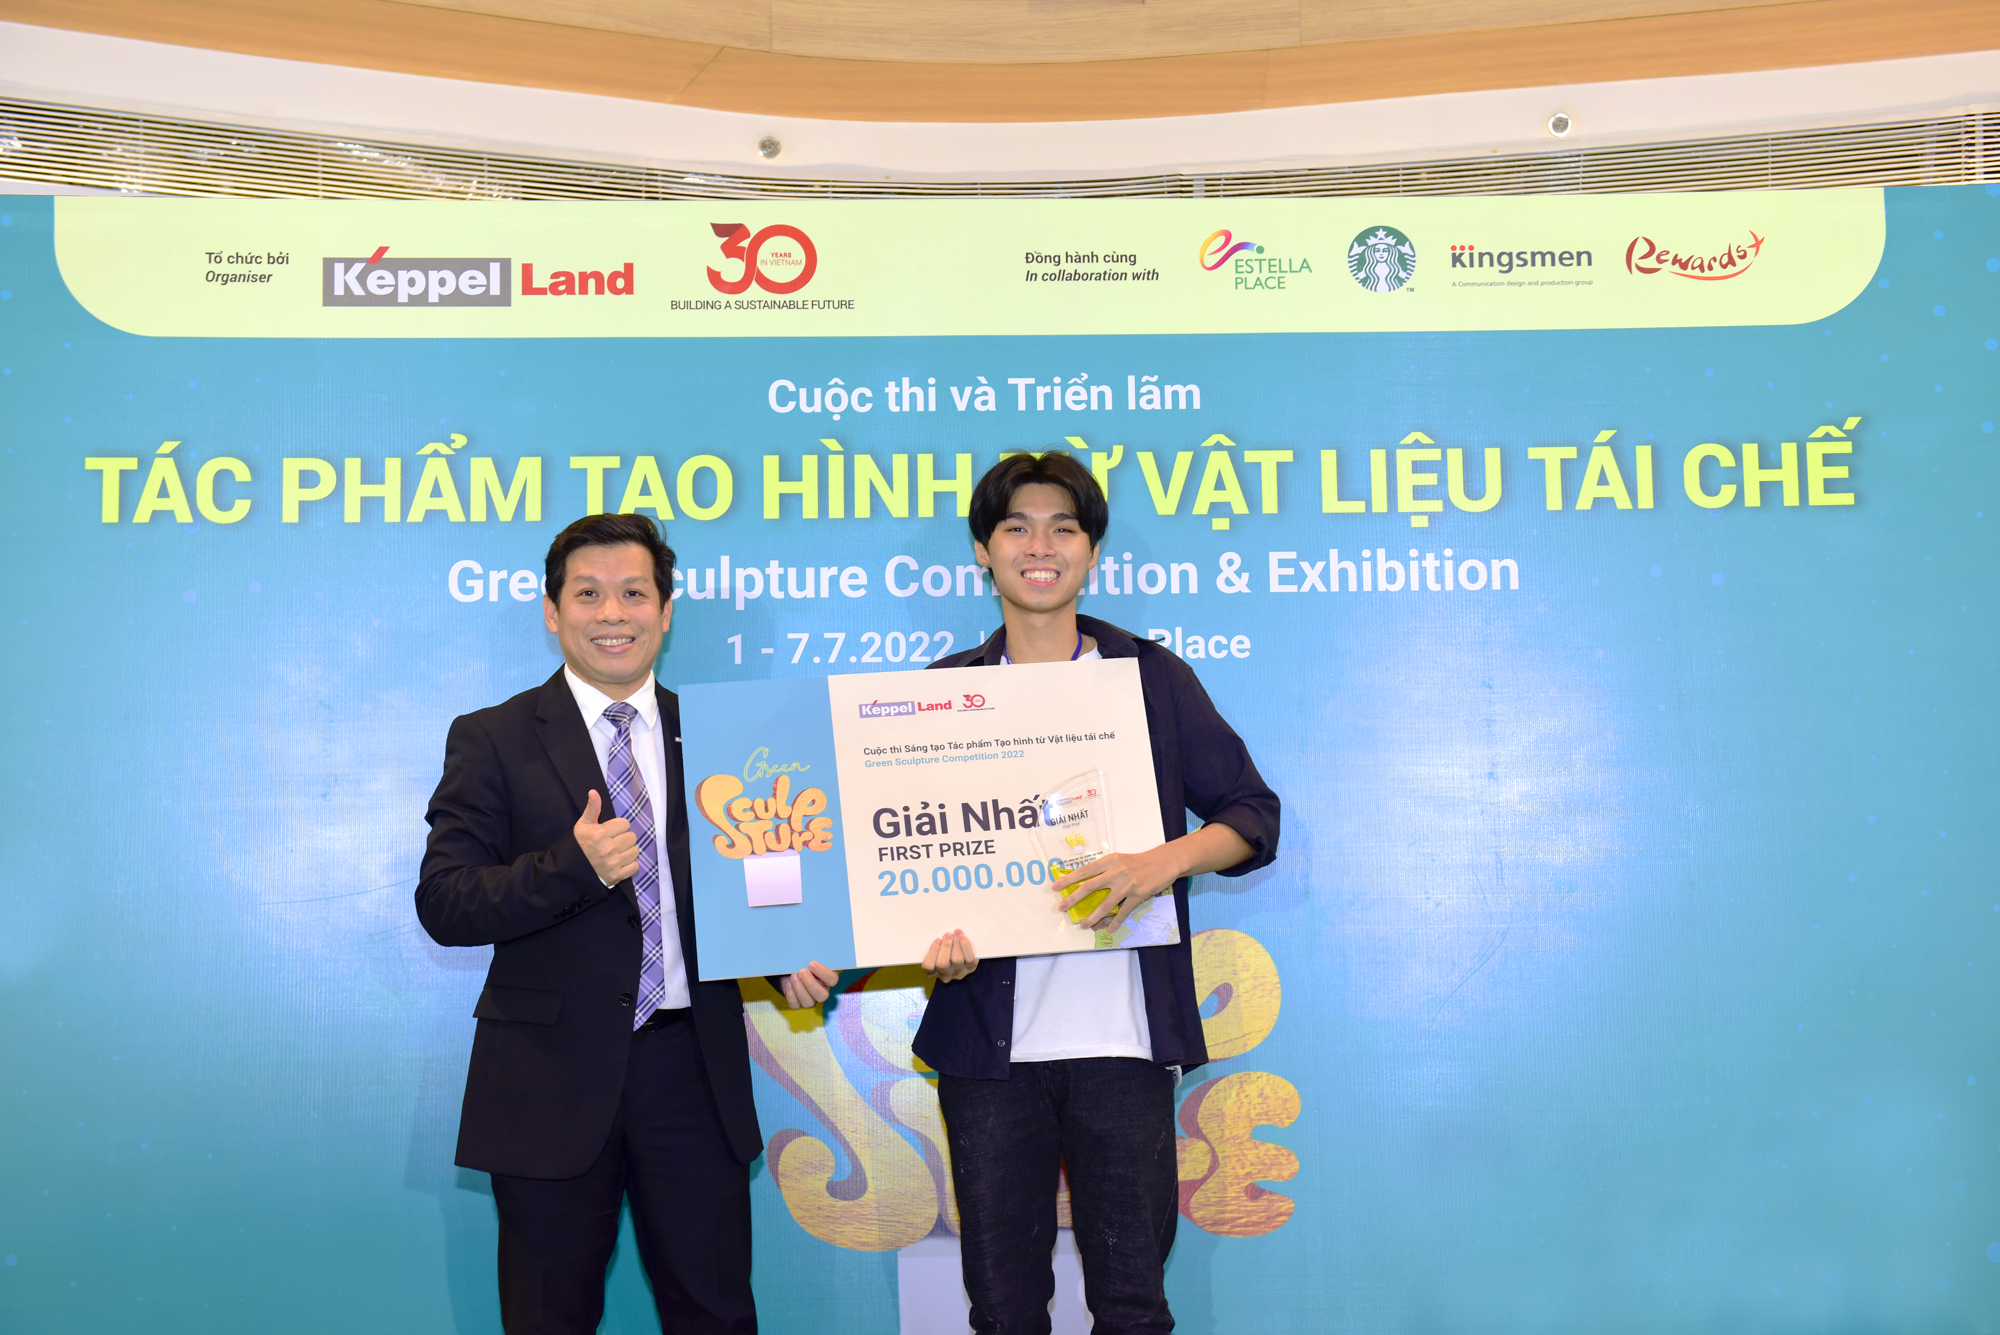 Ông Lee Leong Seng, Giám Đốc Công ty TNHH Saigon Sports City, thành viên Ban Giám Khảo, trao giải nhất cho đại diện nhóm 3R tại Cuộc thi và Triển lãm Green Sculpture.